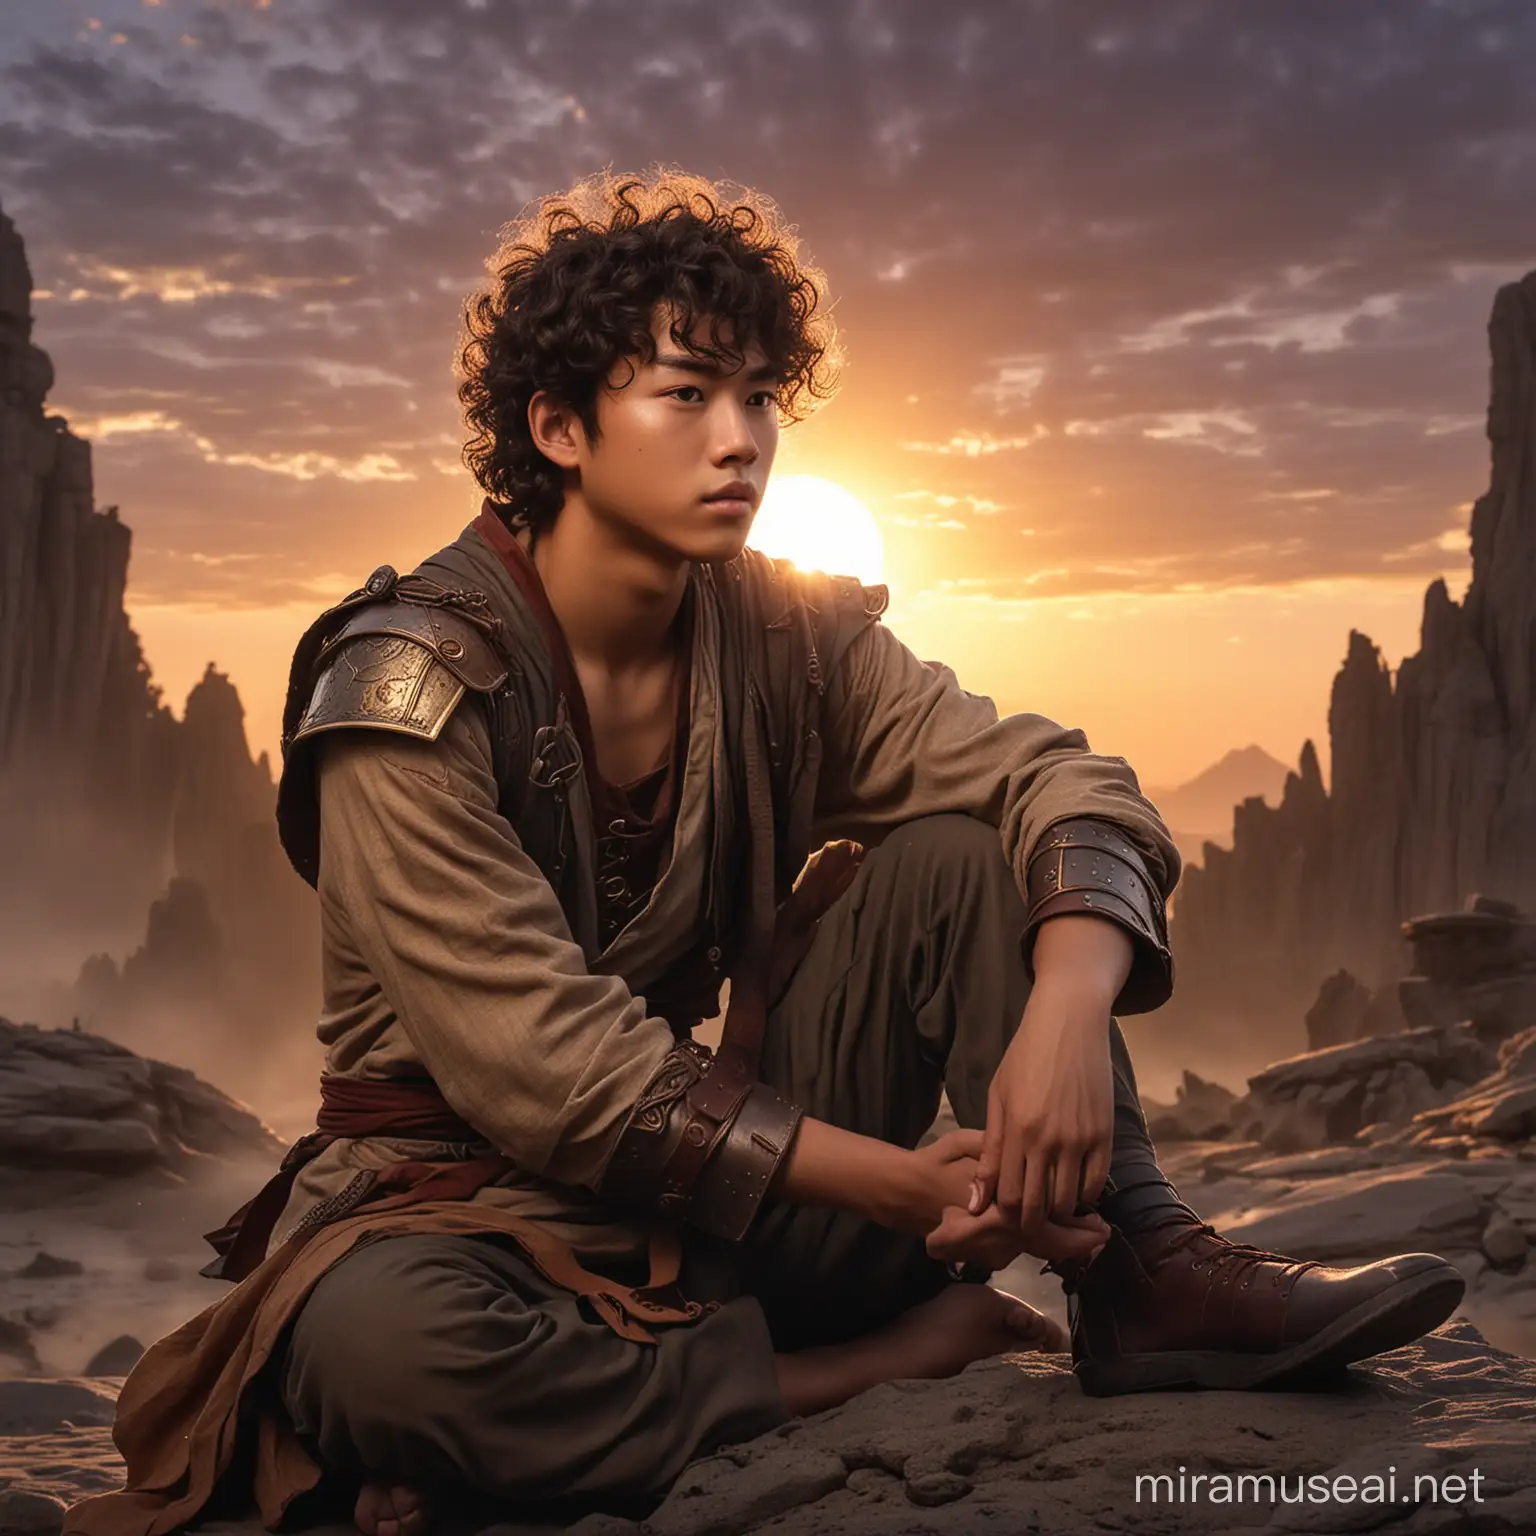 un ado mâle de type asiatique, cheveux bouclés, dans un style heroic fantasy, assis, après un combat épique, au coucher du soleil